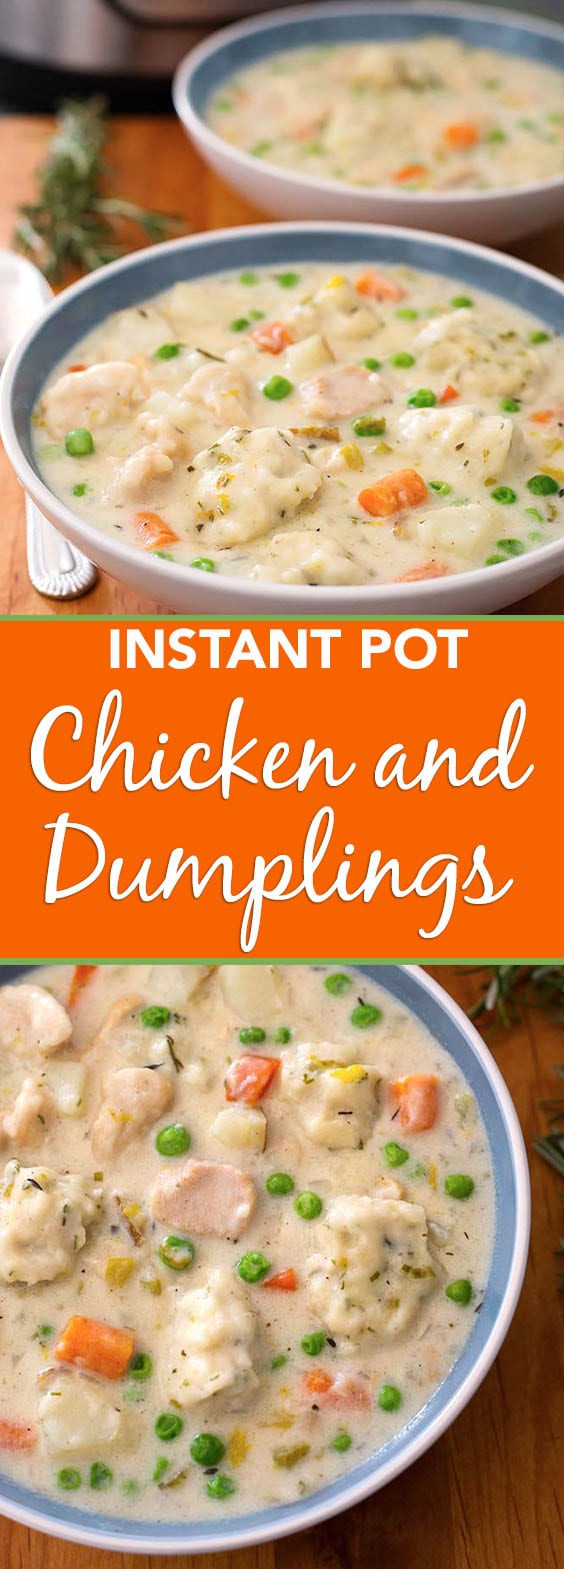 Chicken And Dumplings In Instant Pot
 Instant Pot Chicken and Dumplings